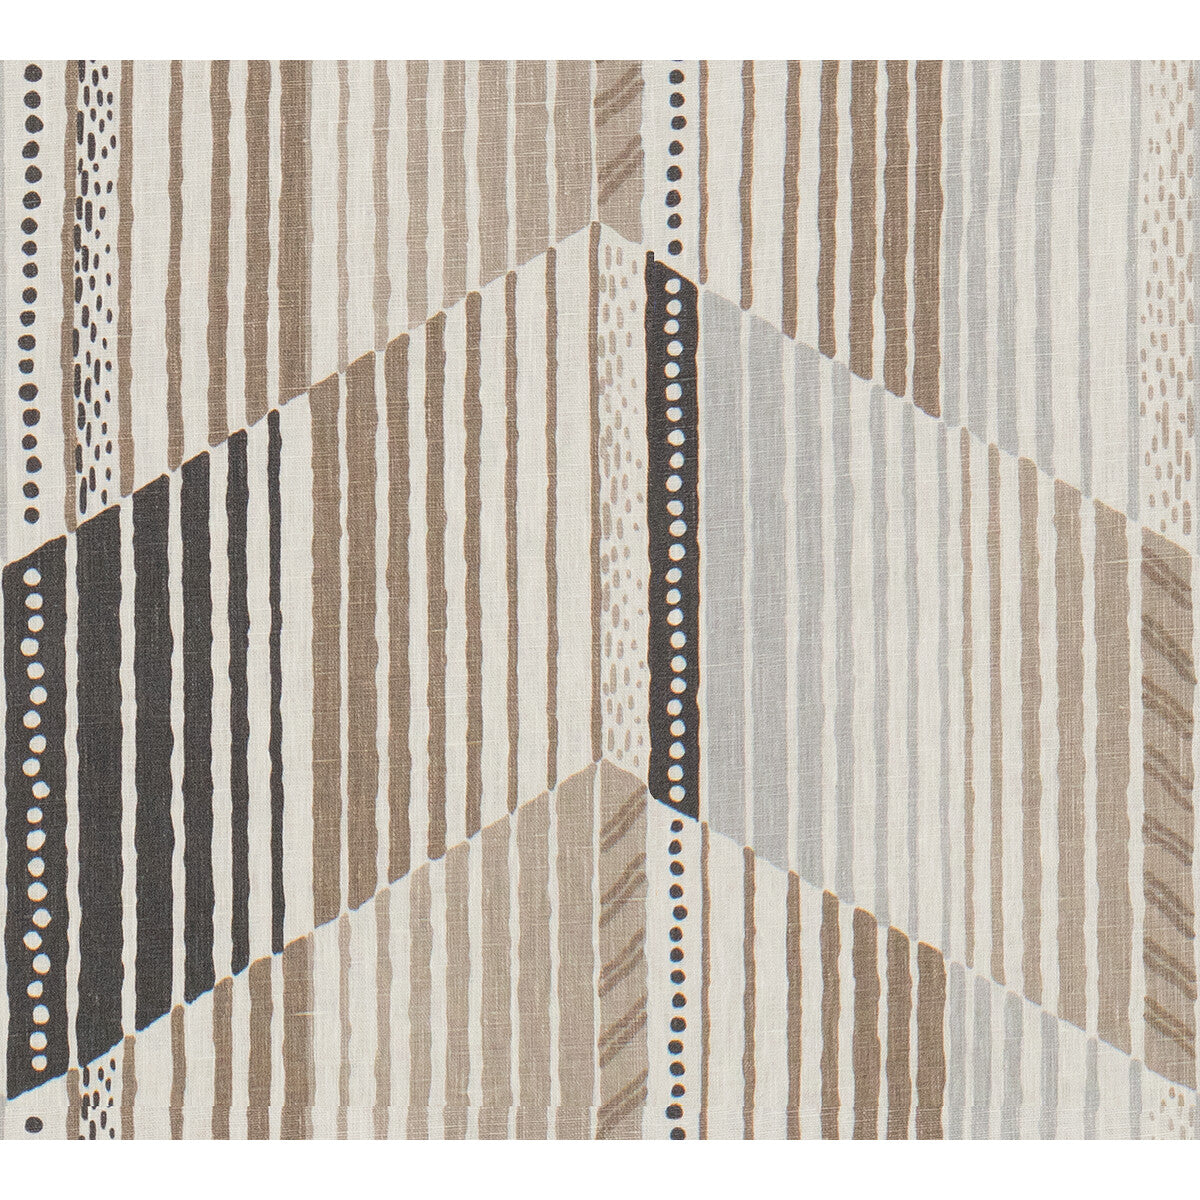 Reflex fabric in portobello color - pattern REFLEX.616.0 - by Kravet Design